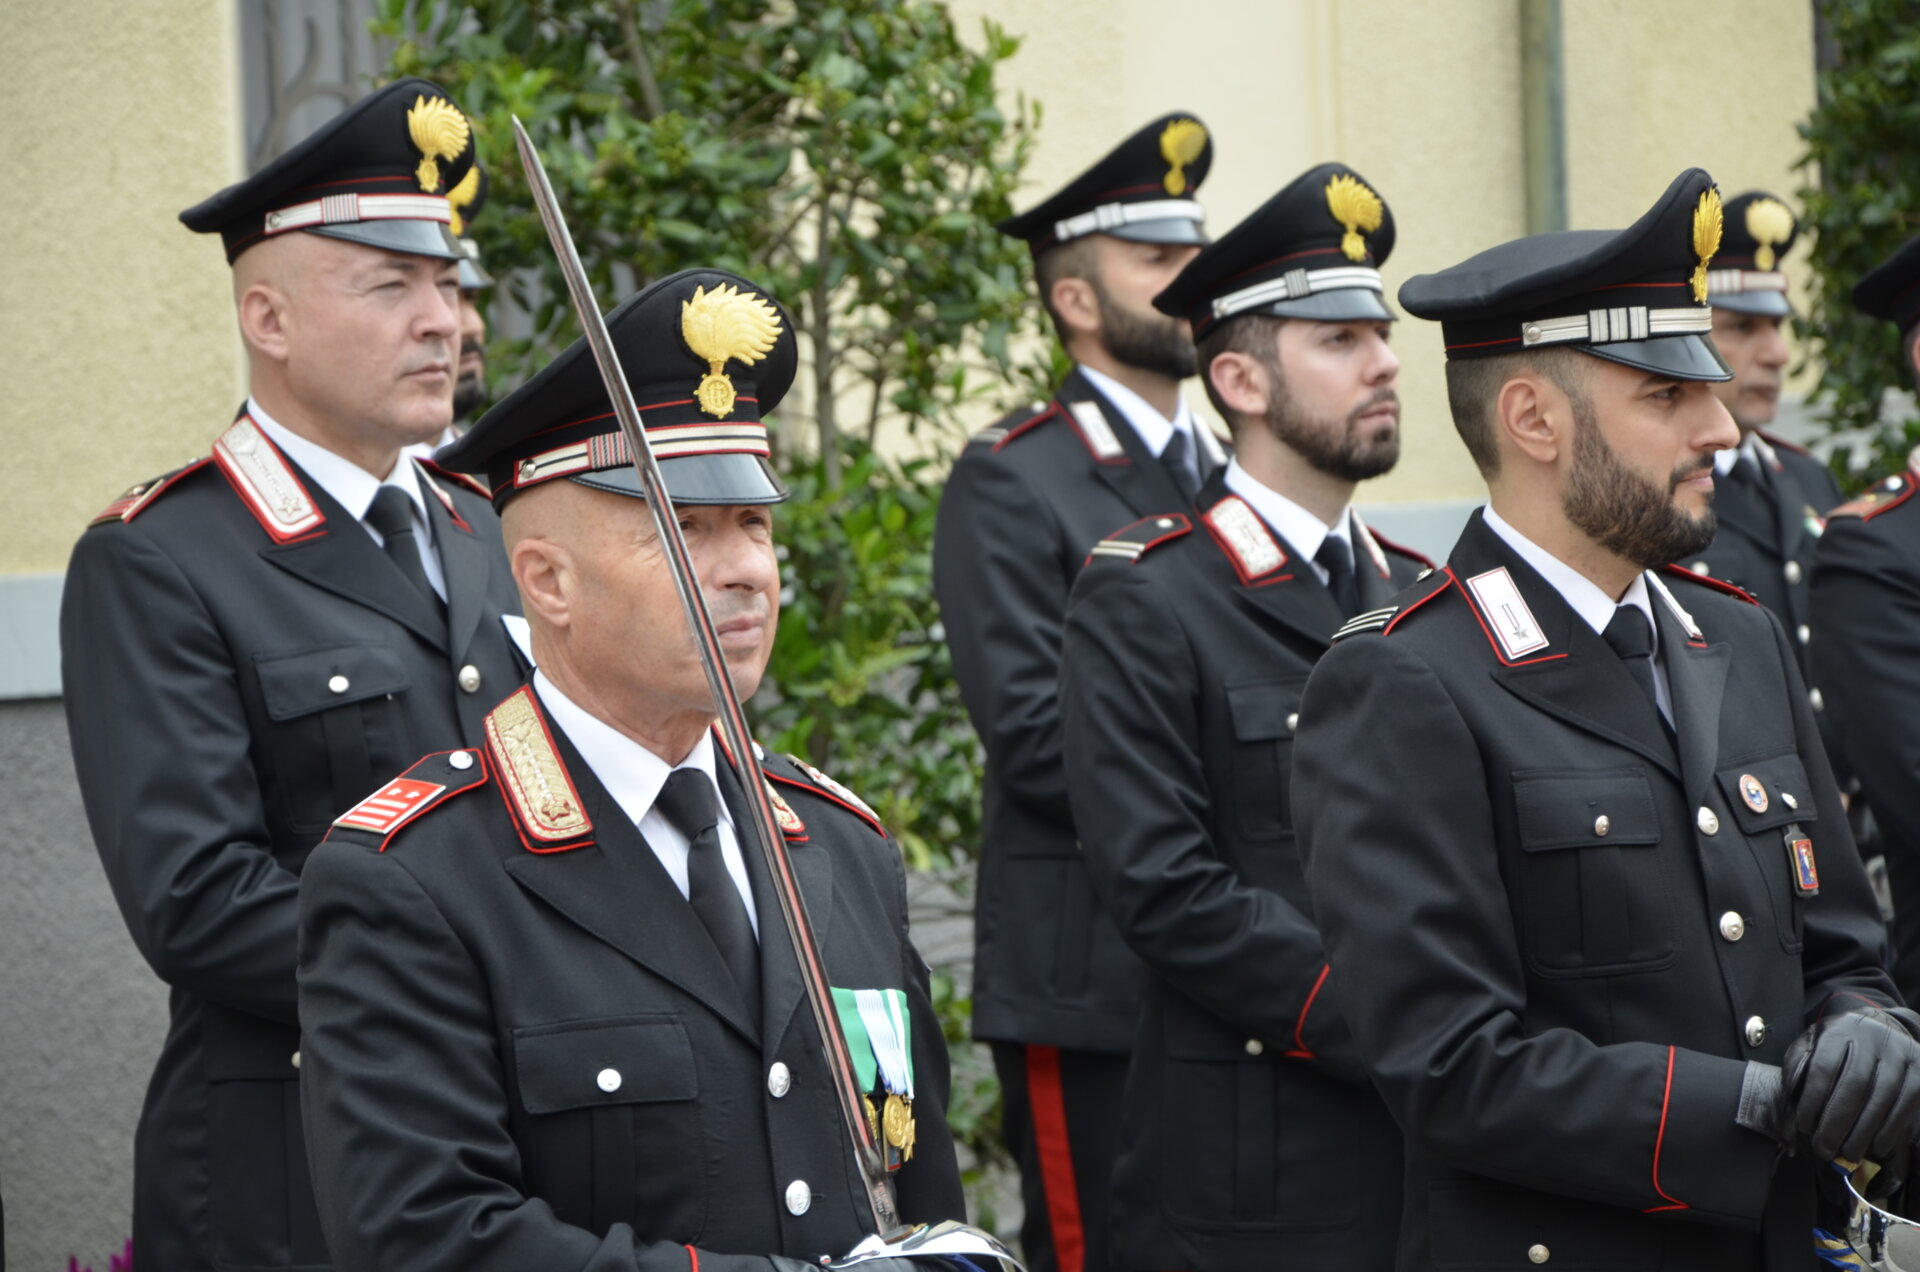 carabinieri vercelli festa duemilaventitre c